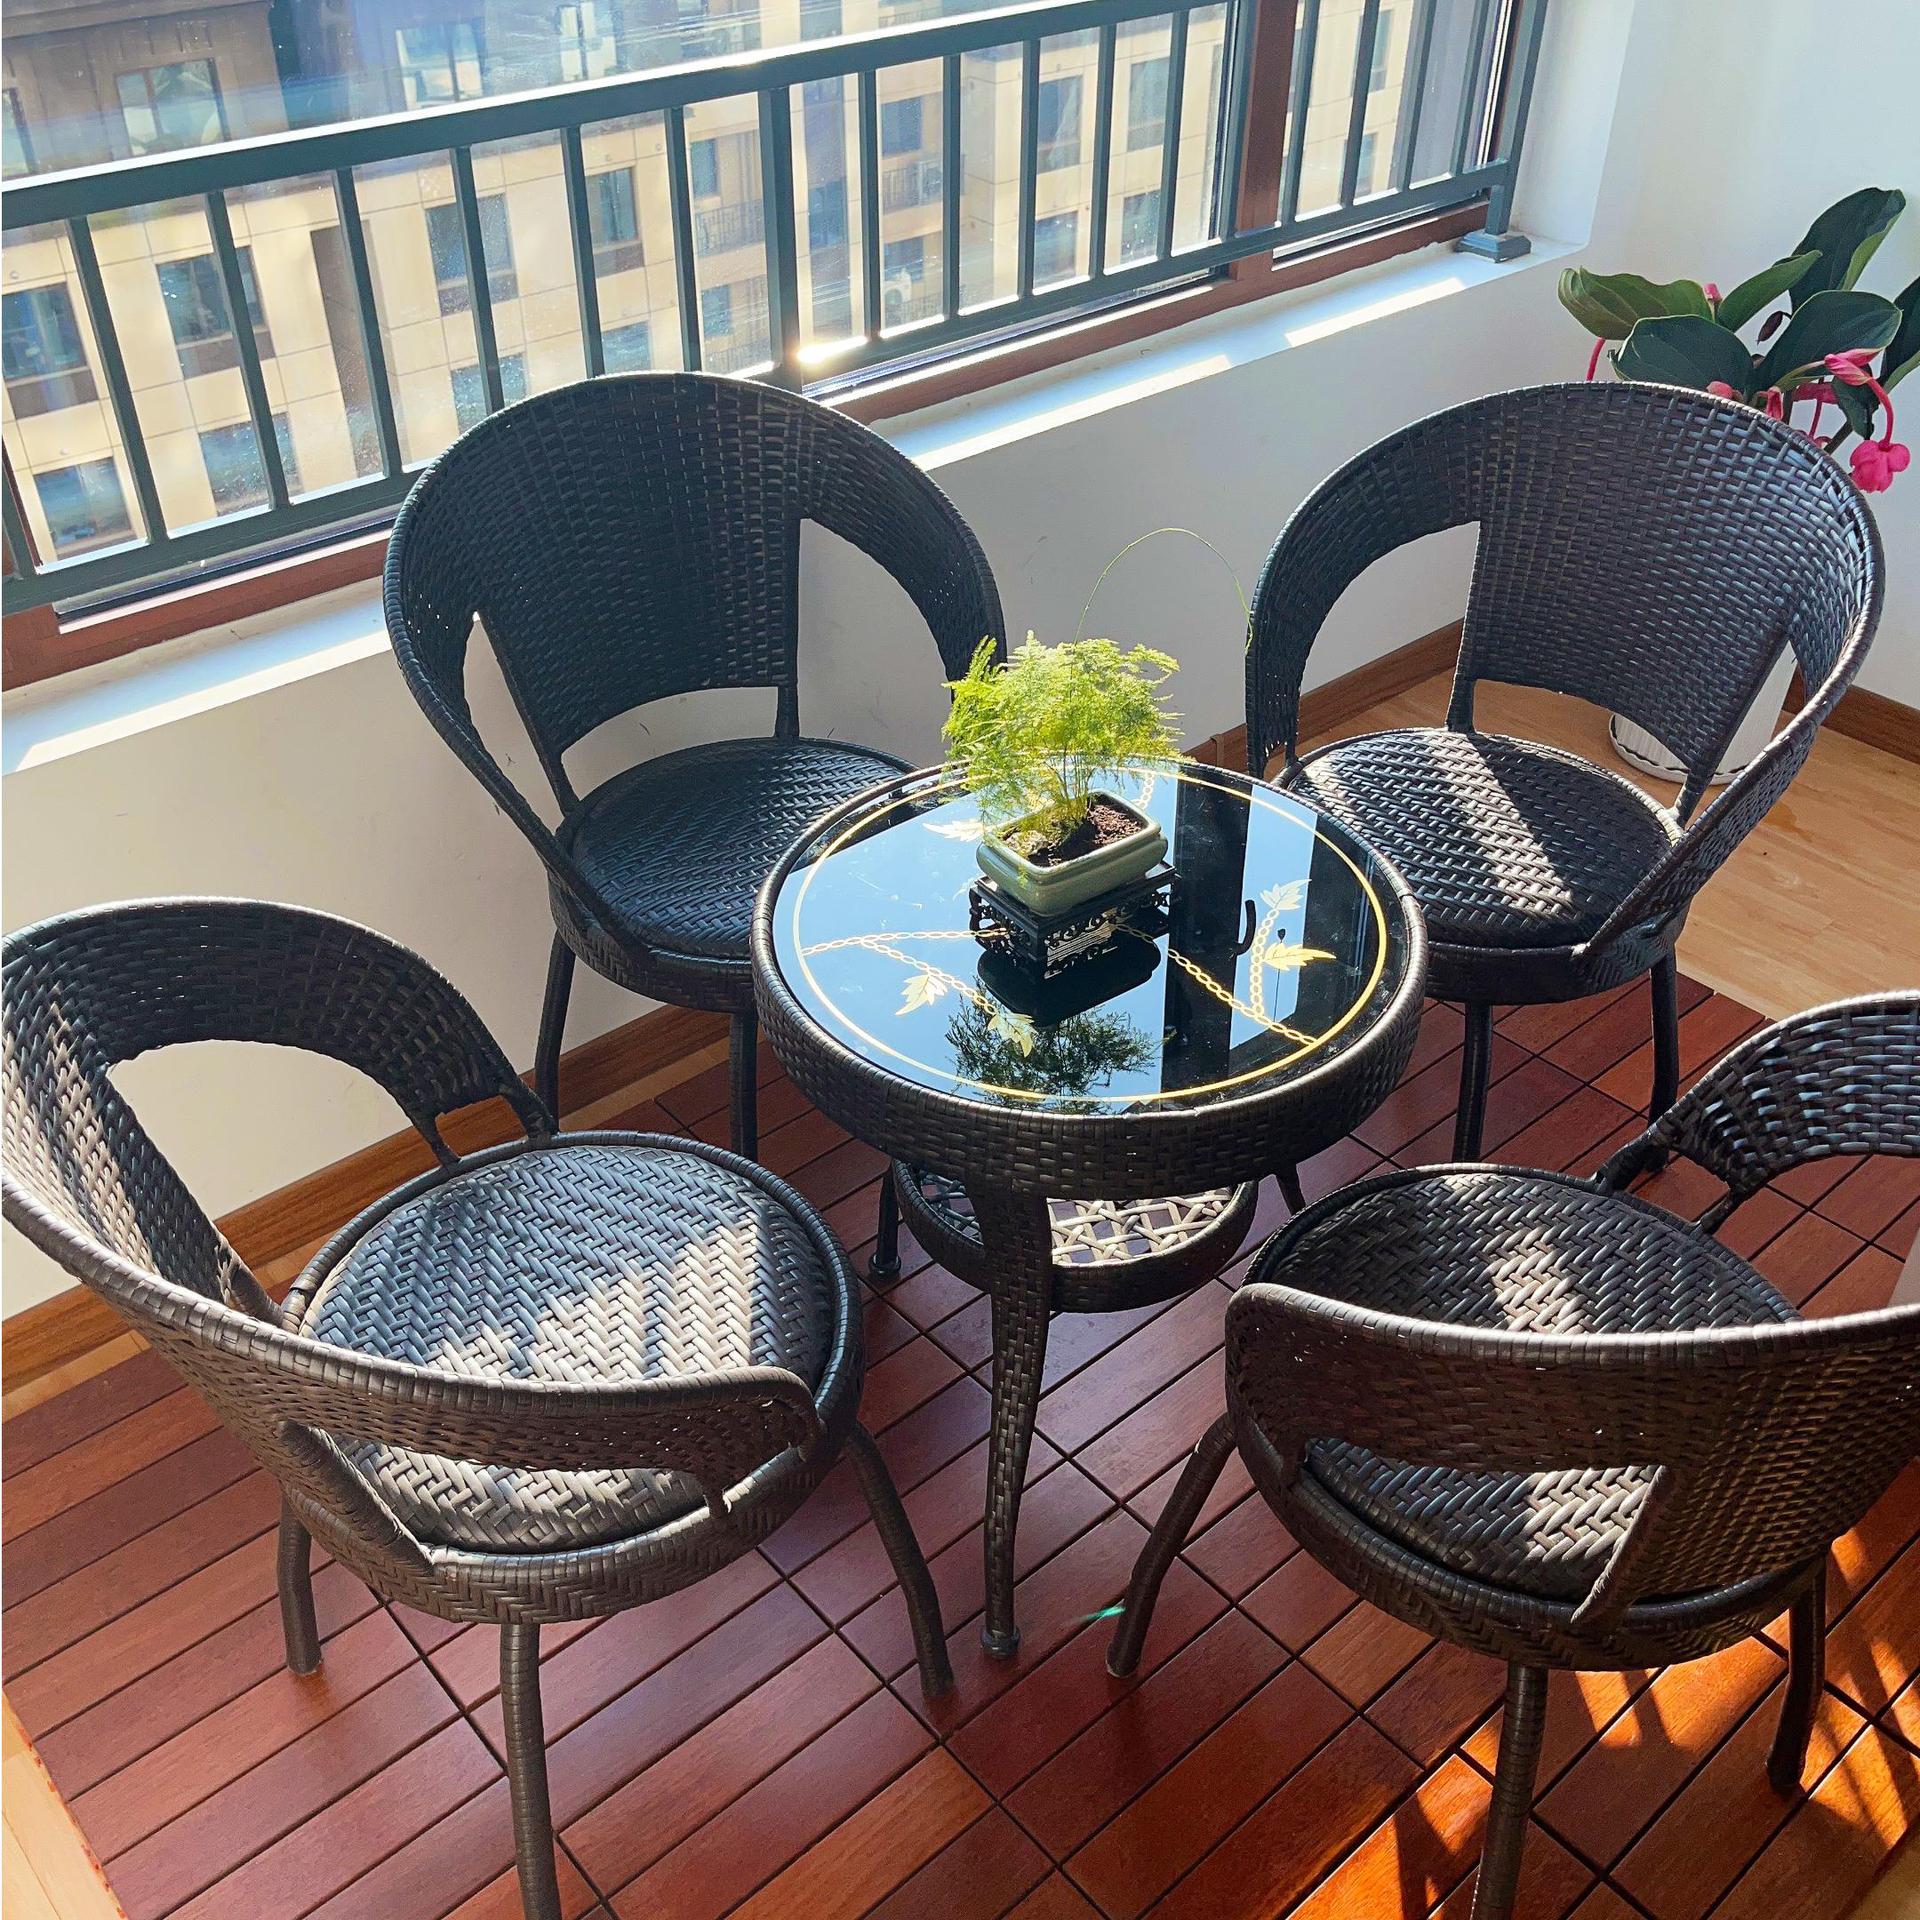 新品阳台小桌椅户外庭院露天休闲藤编椅子茶几组合花园藤椅三件套